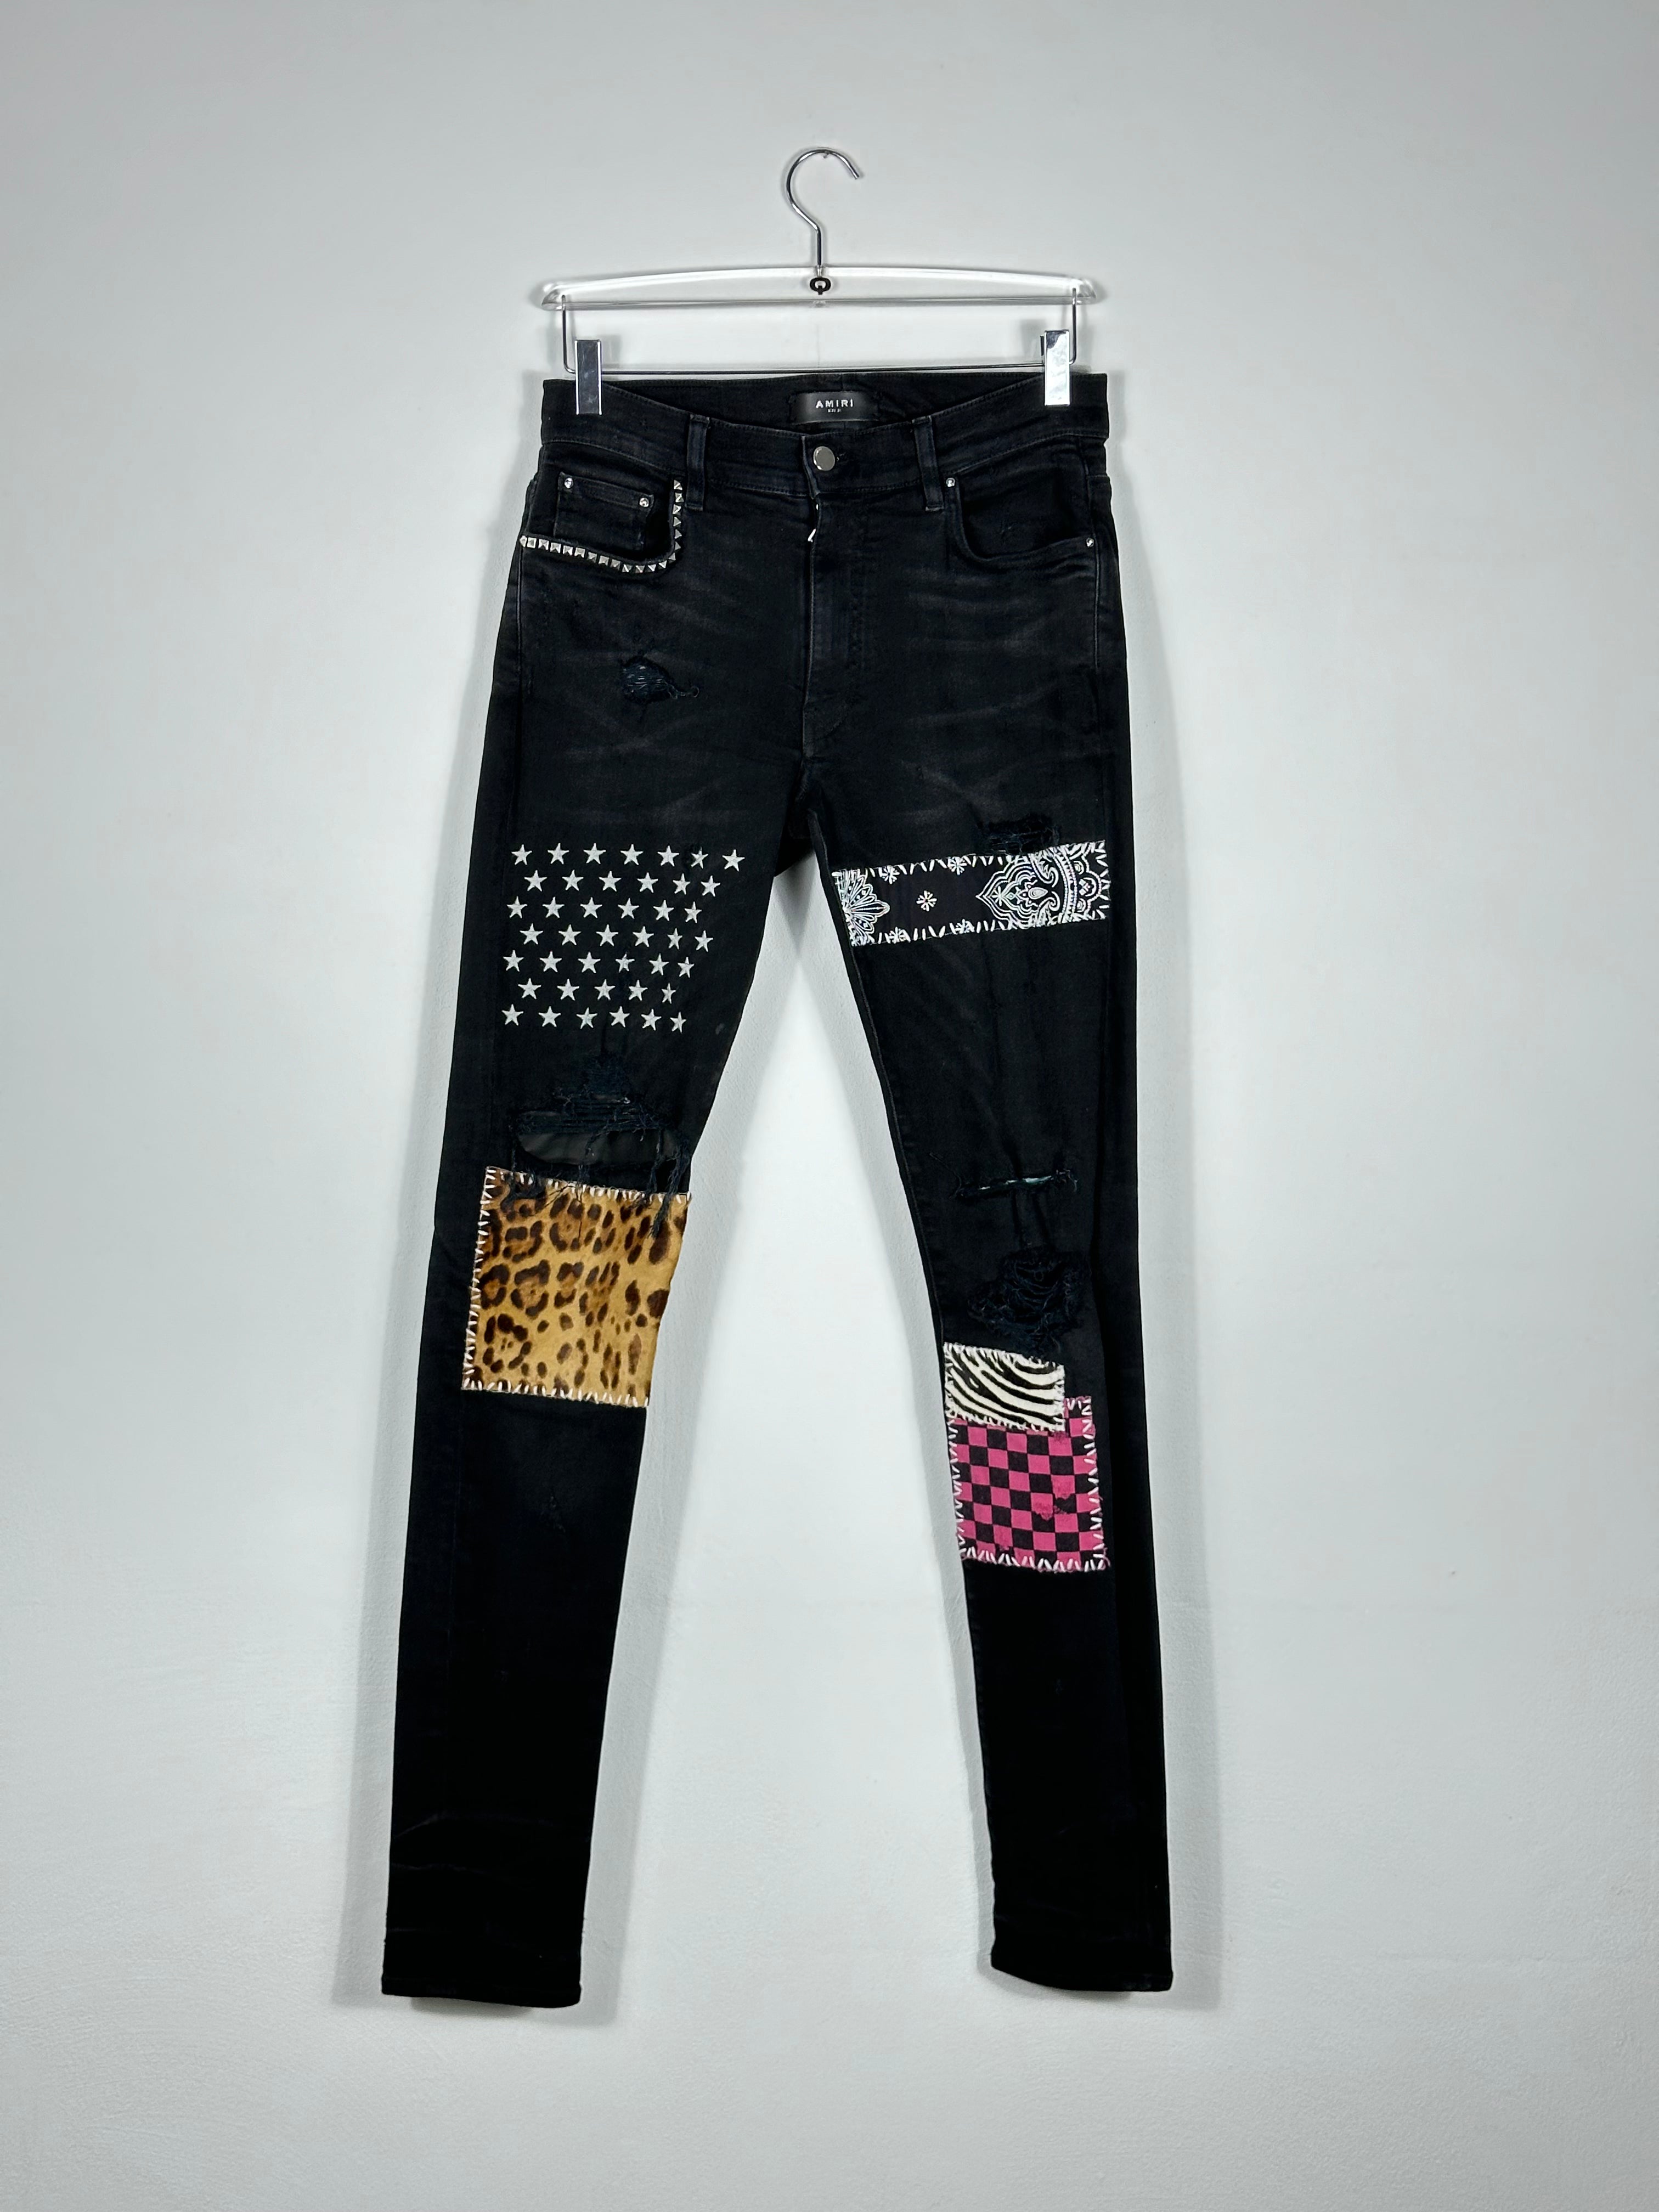 Jeans With Studs by Sfera Ebbasta